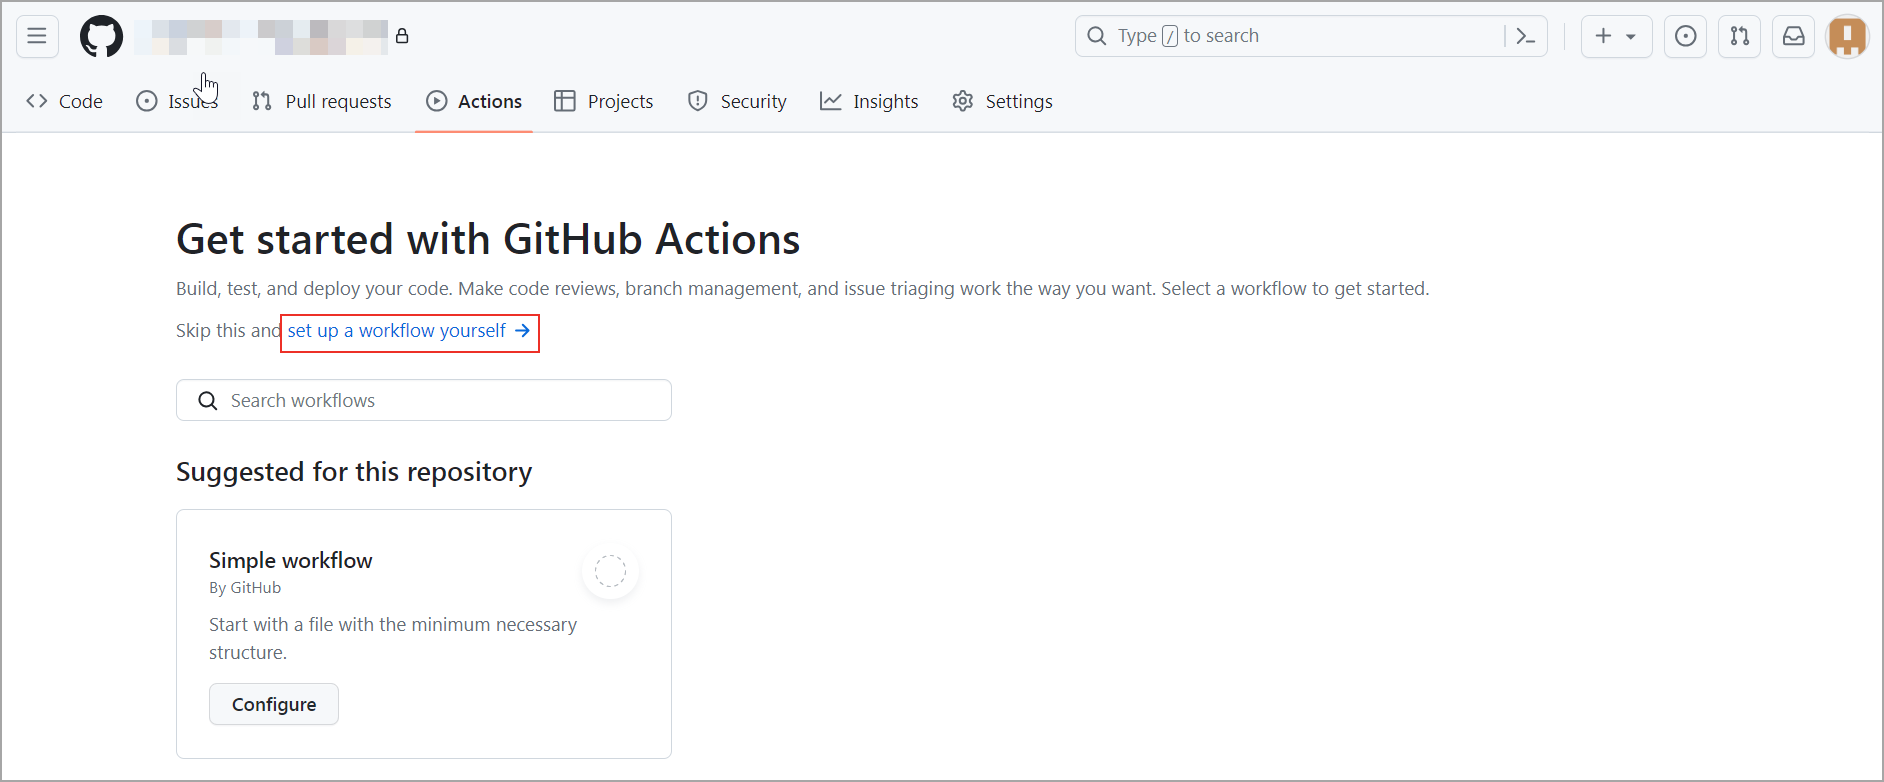 Image shows GitHub workflow setup option.